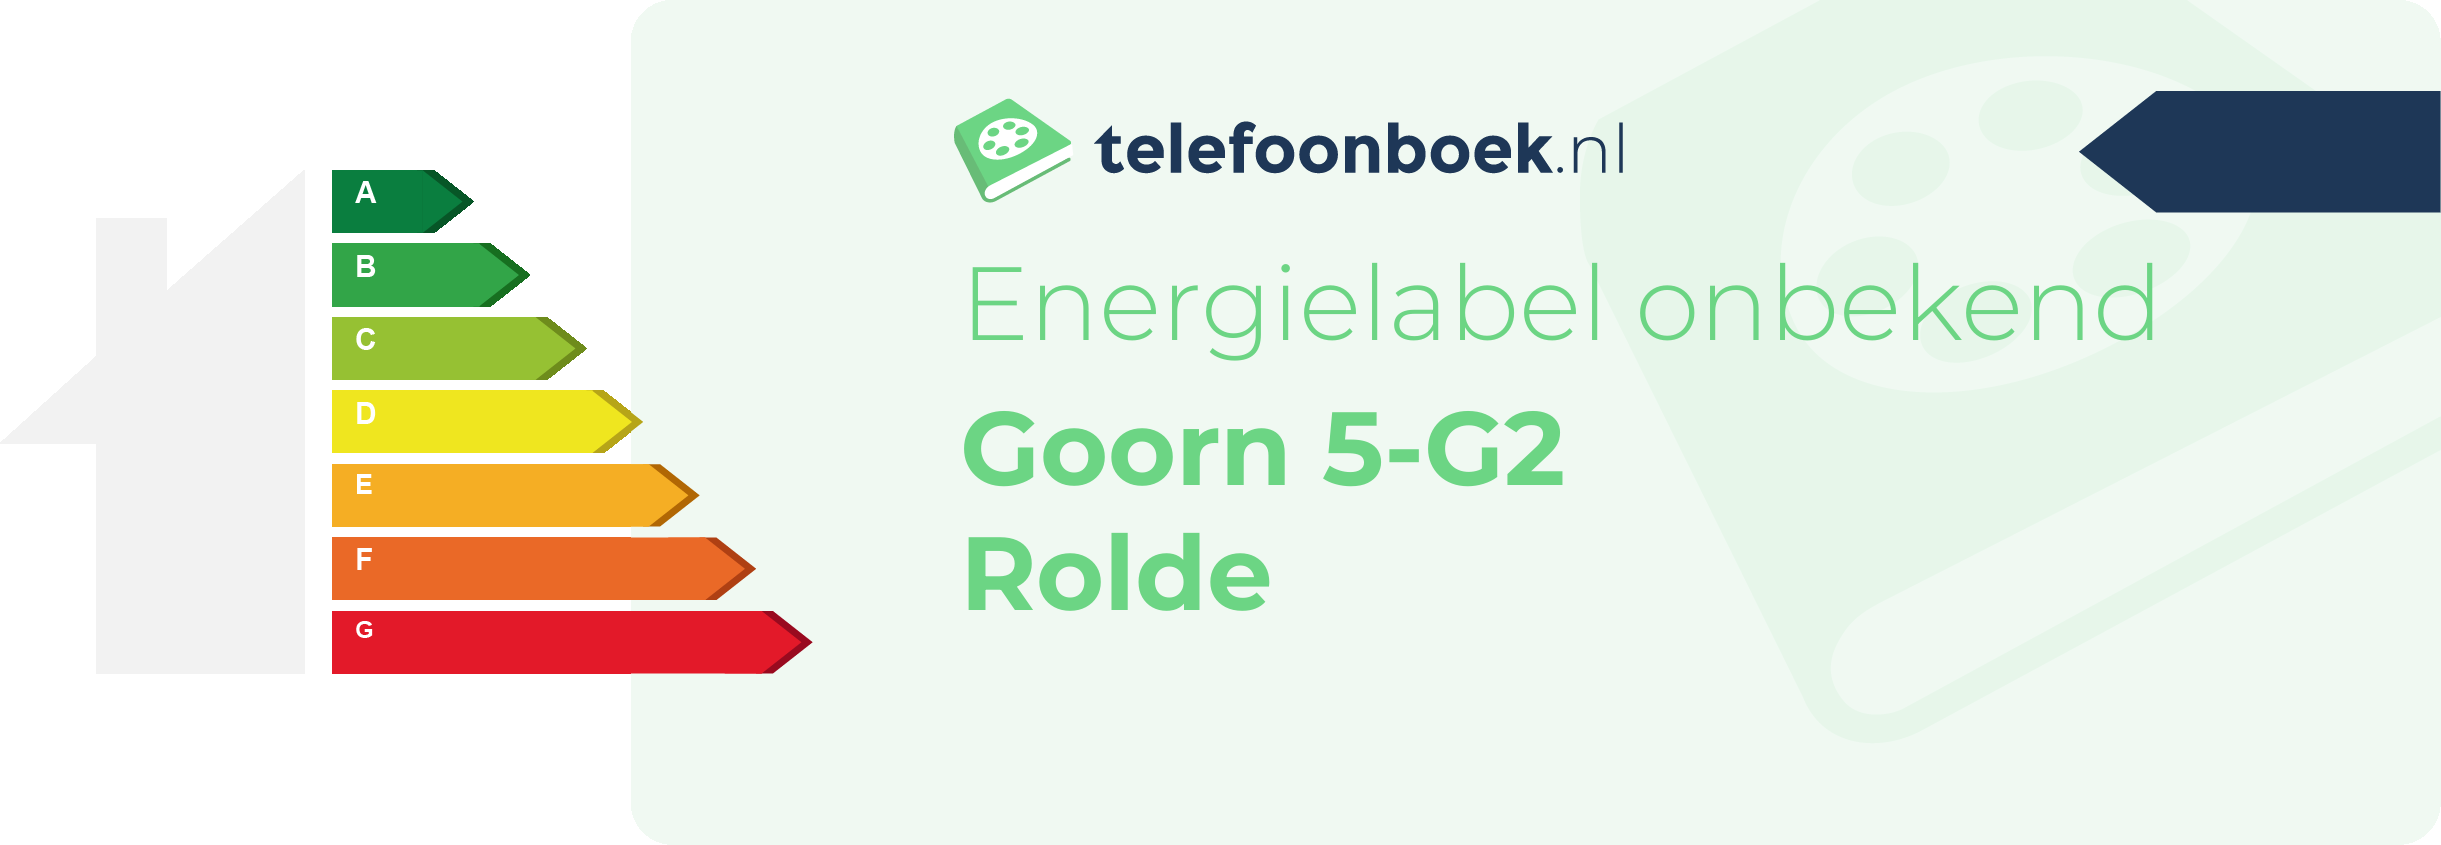 Energielabel Goorn 5-G2 Rolde